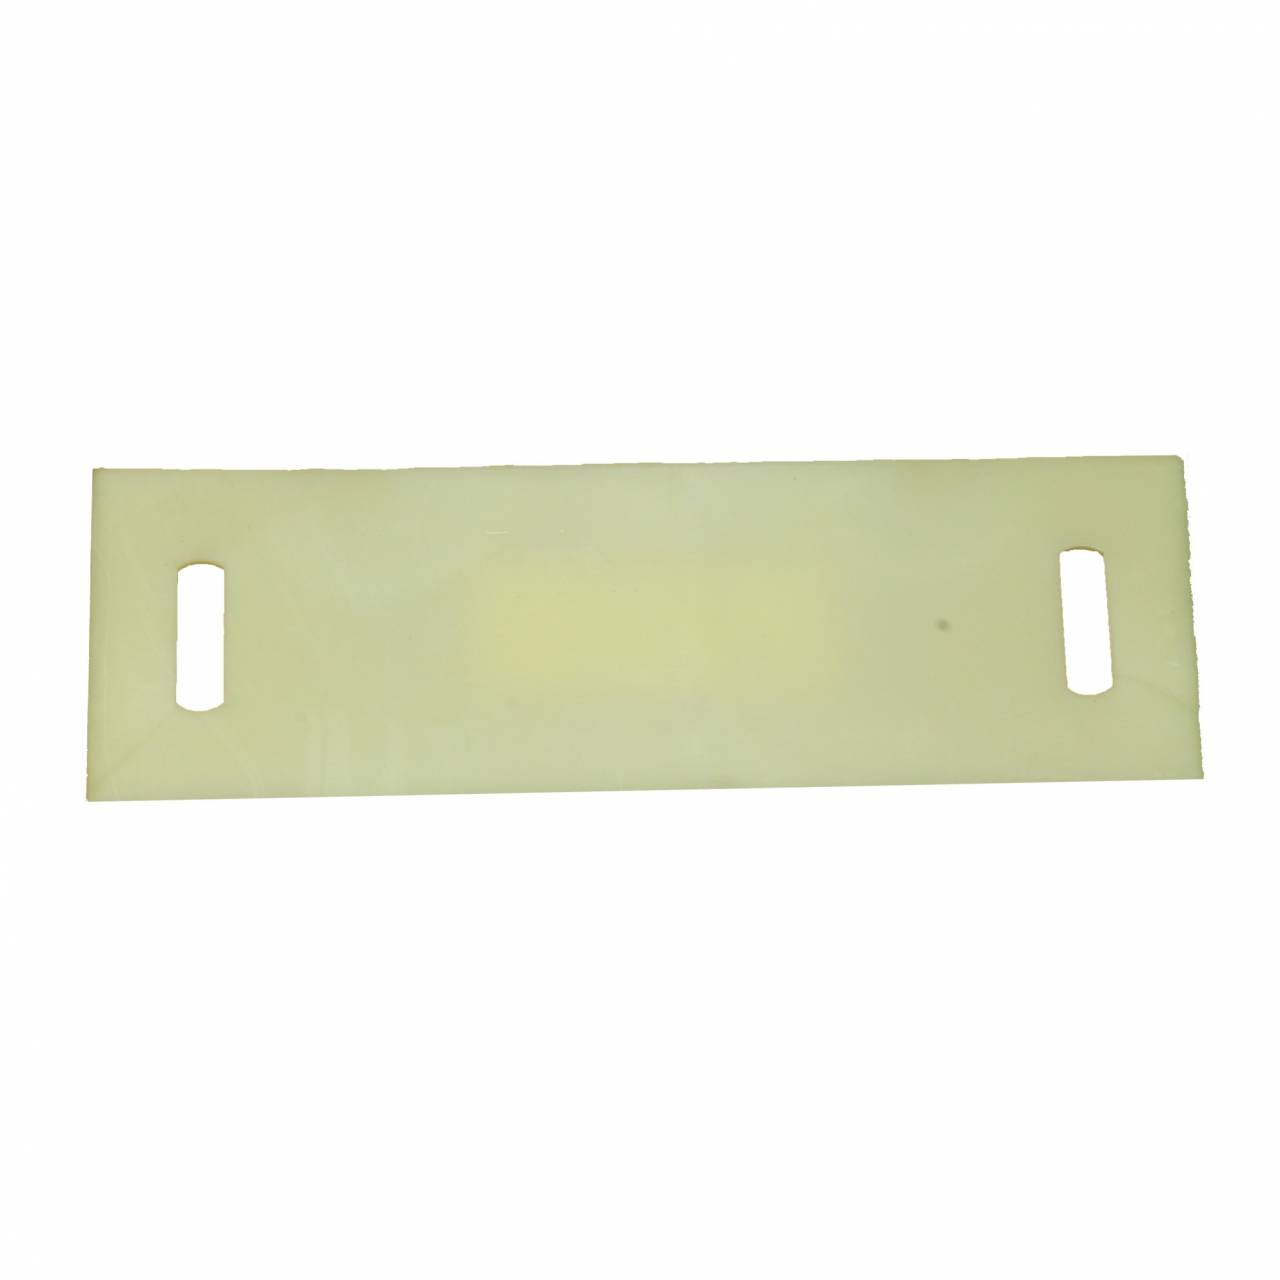 PU-Schutzplatte für Zurrgurtunterlage, Bandbreite 35 mm